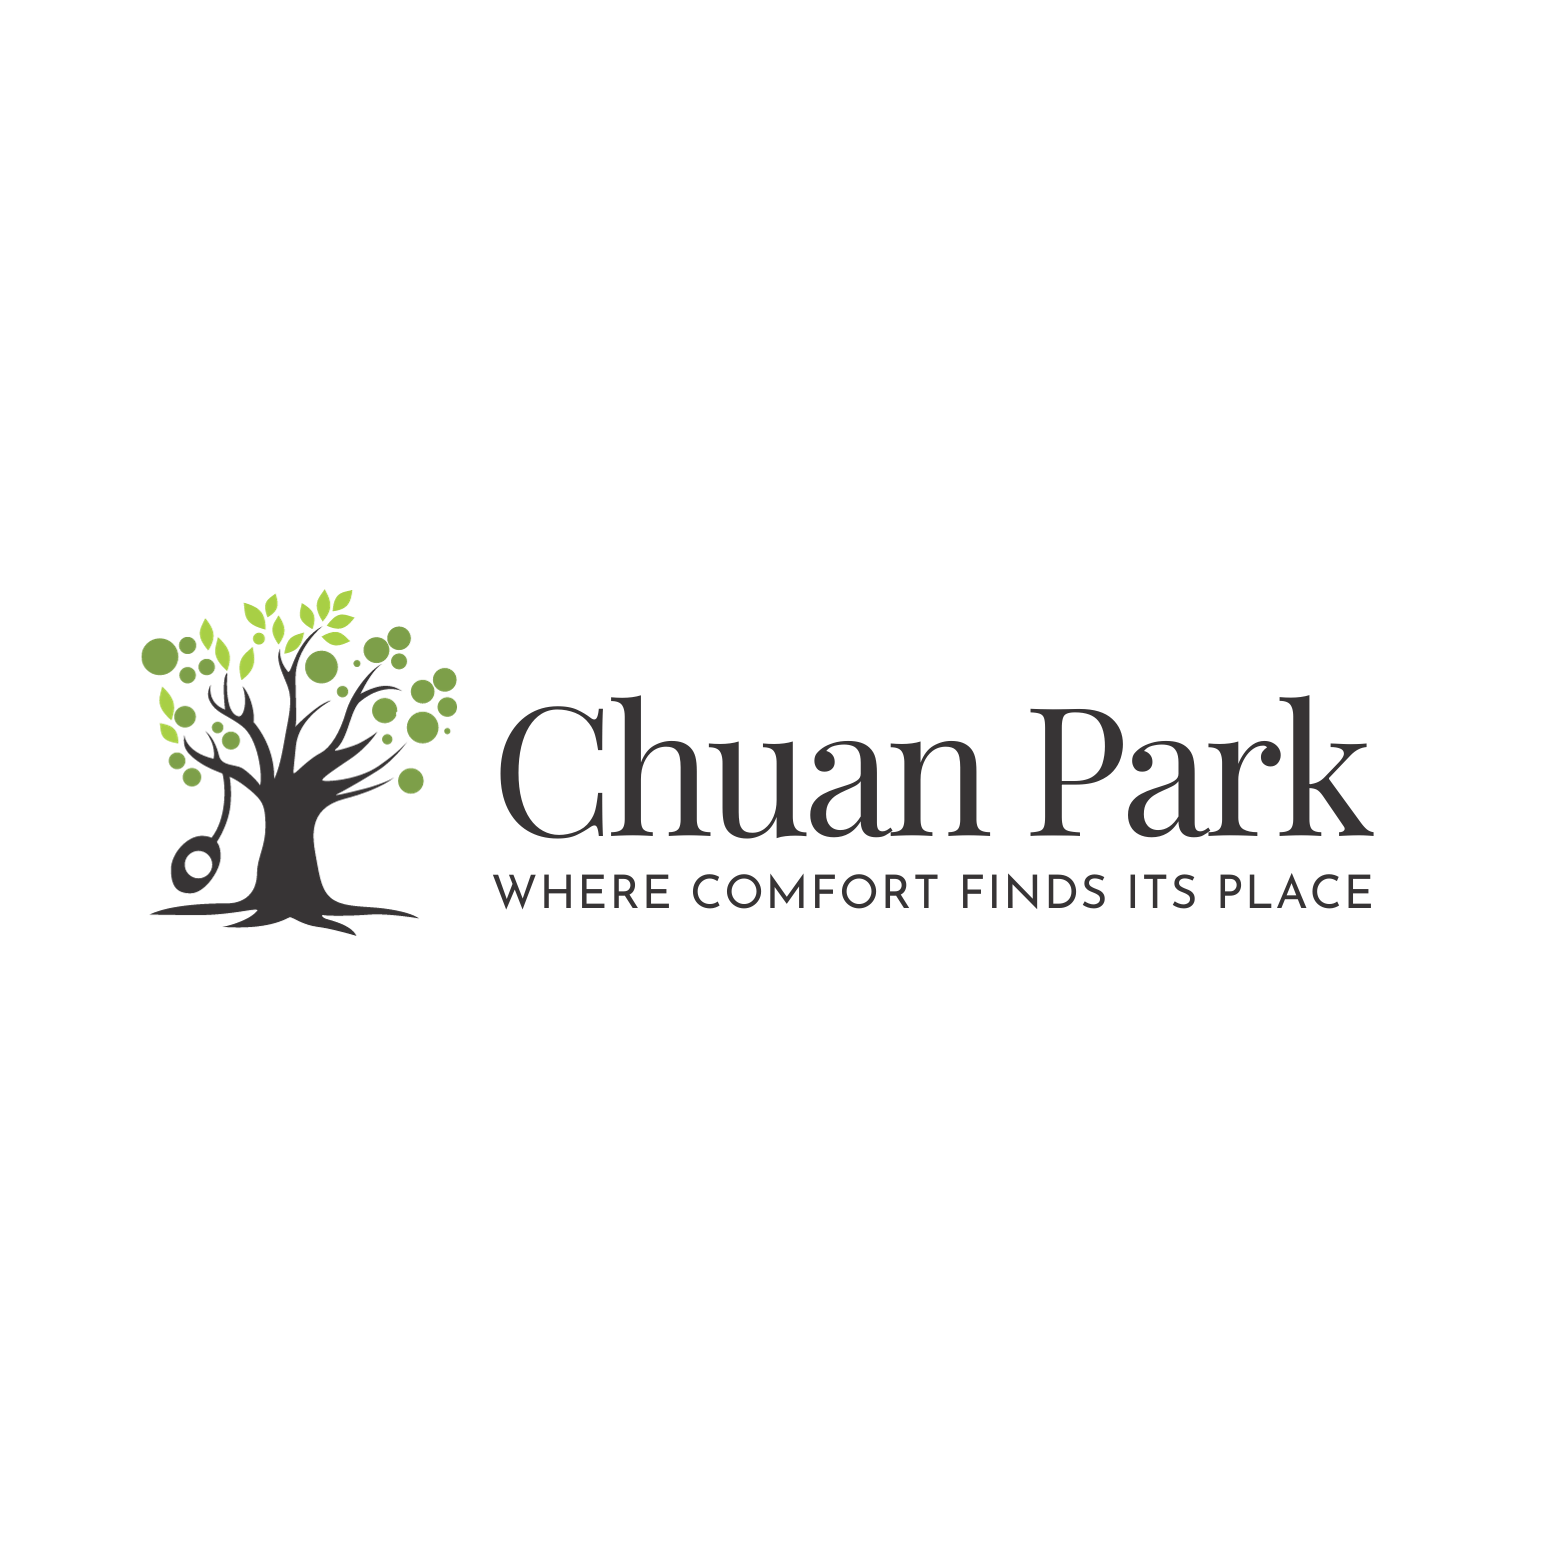 Chuan Park units